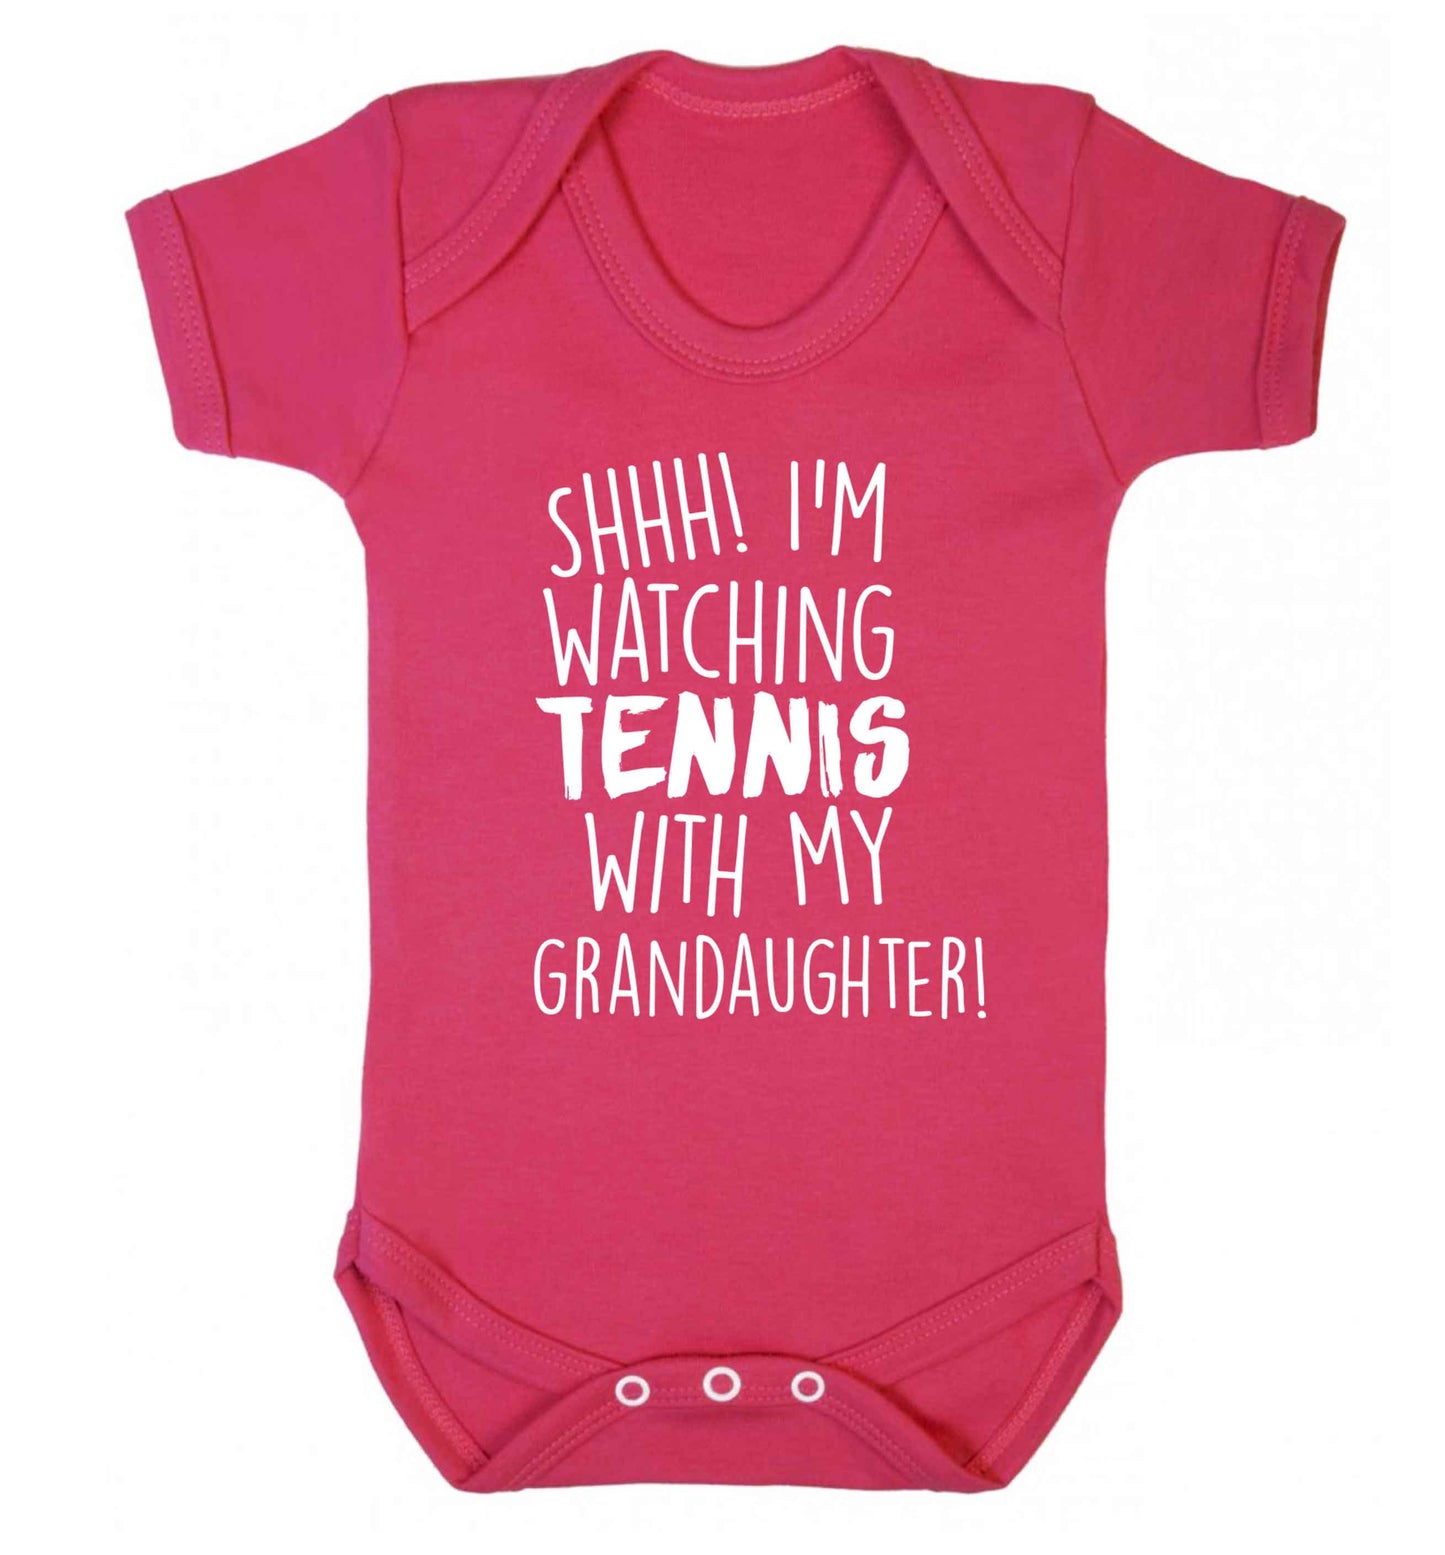 Shh! I'm watching tennis with my granddaughter! Baby Vest dark pink 18-24 months